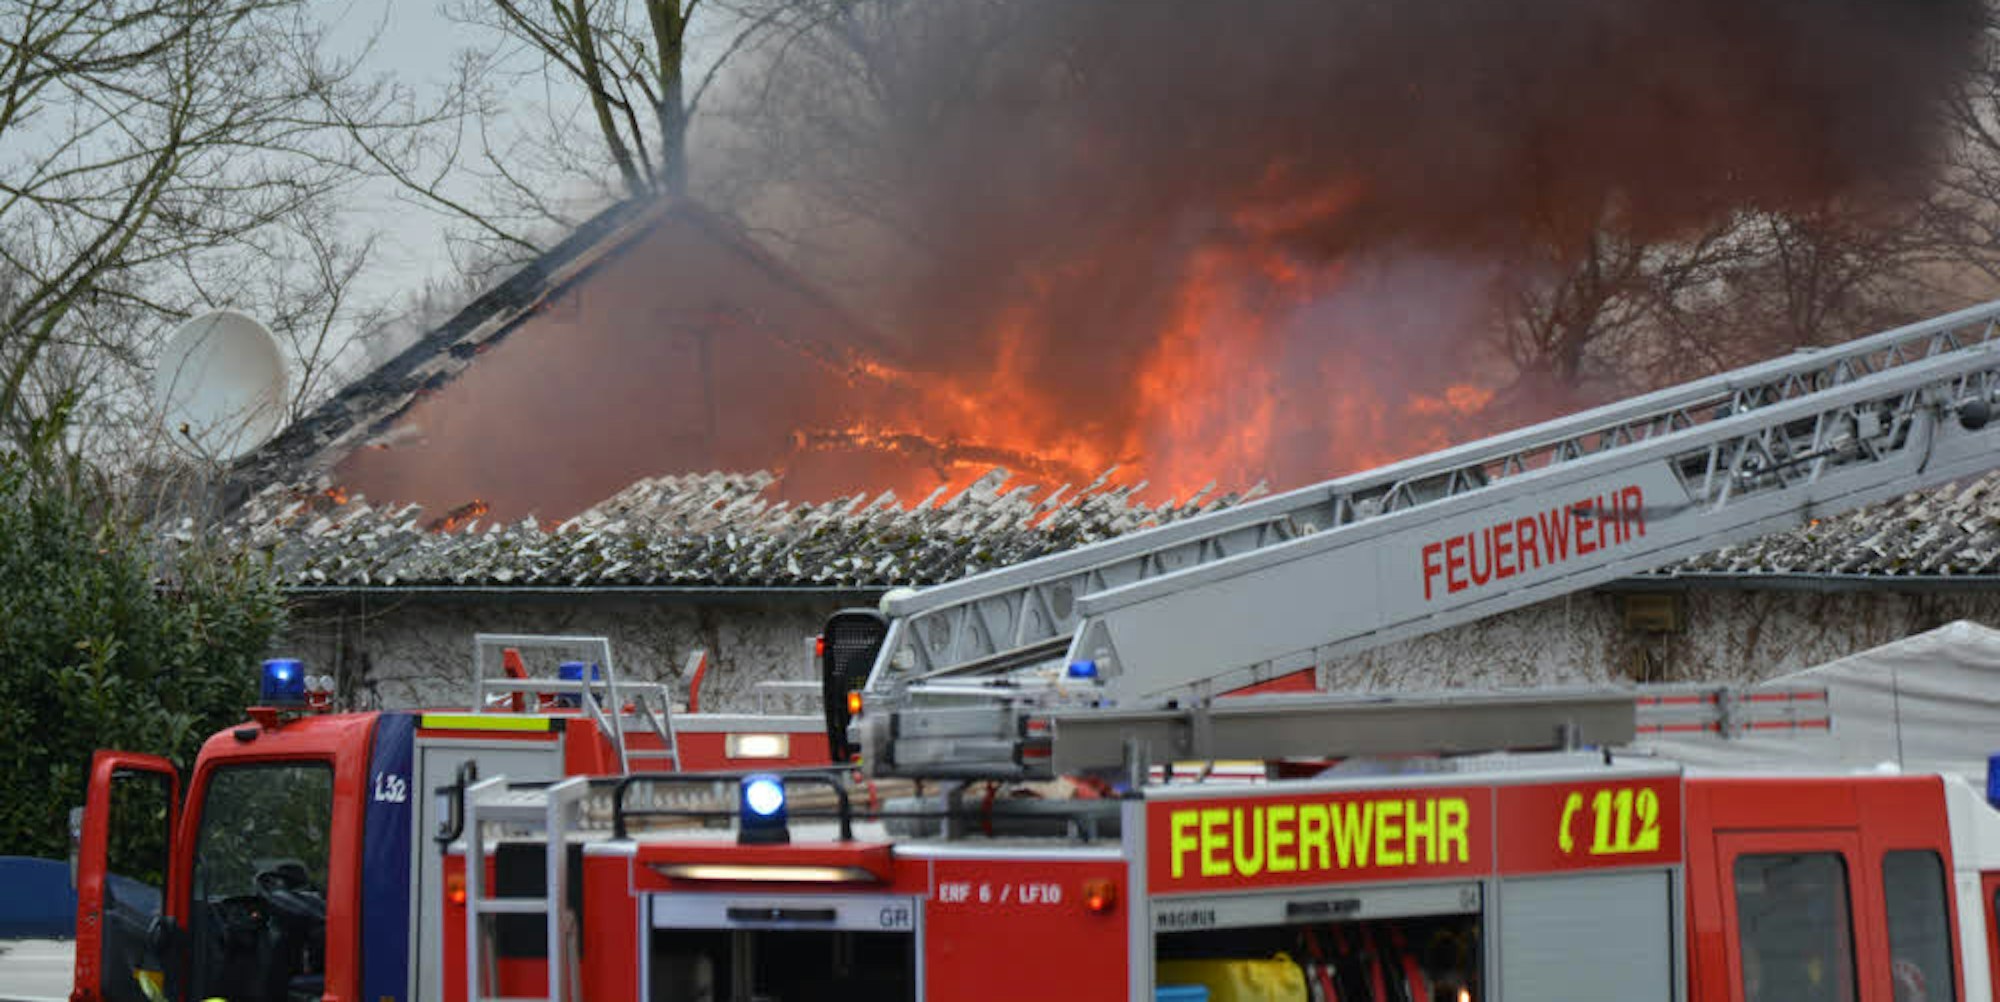 Meterhoch schlugen die Flammen aus der Lagerhalle. Die Dachkonstruktion stürzte ein, verletzt wurde glücklicherweise niemand.